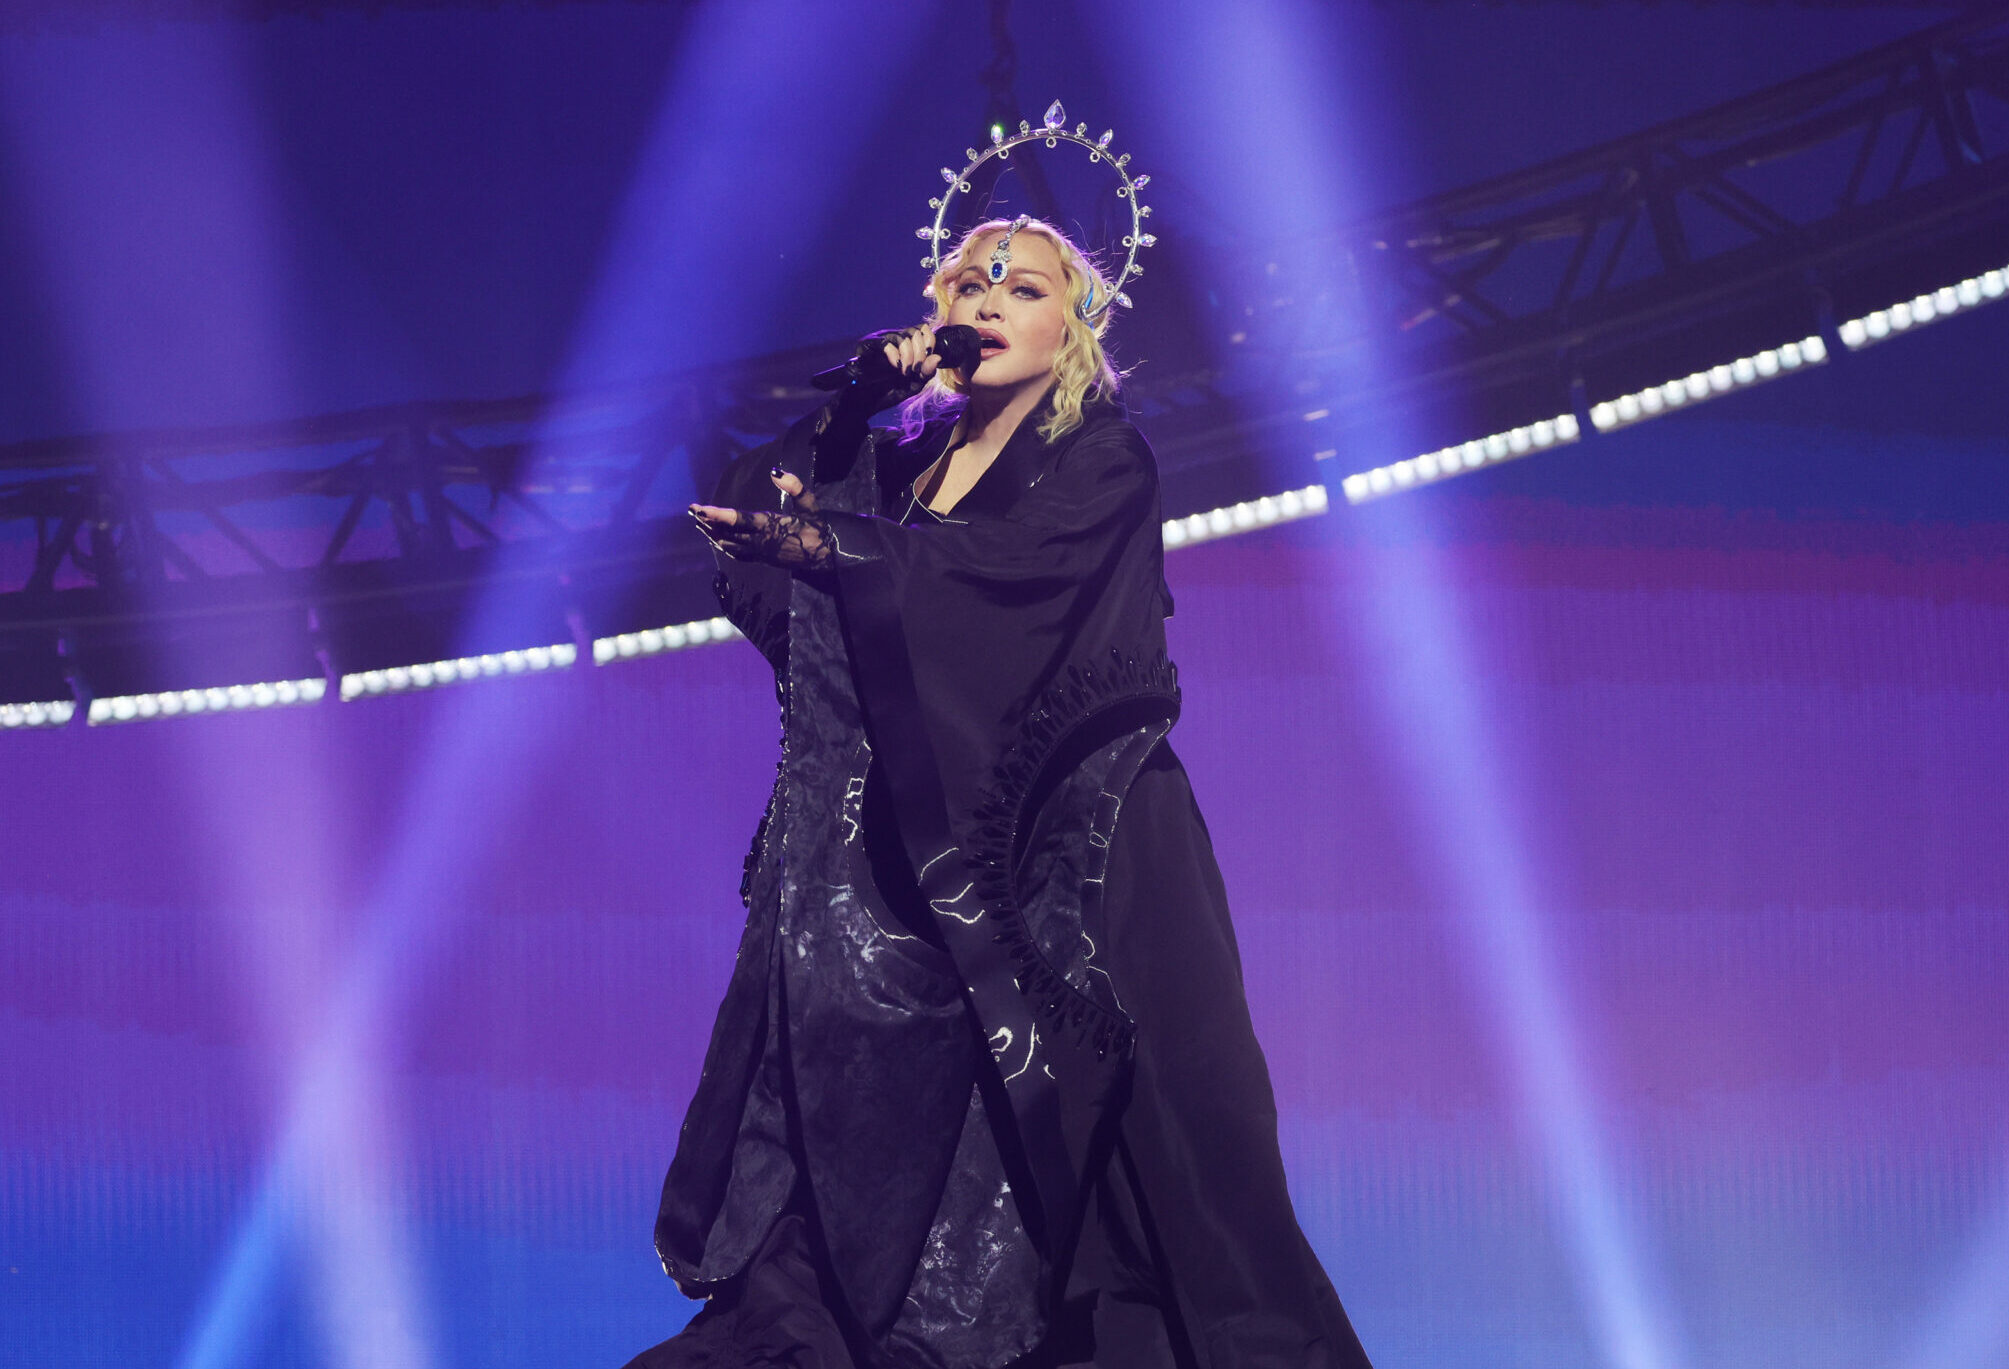 OFICIAL! Madonna anuncia show no Rio de Janeiro; saiba data e detalhes